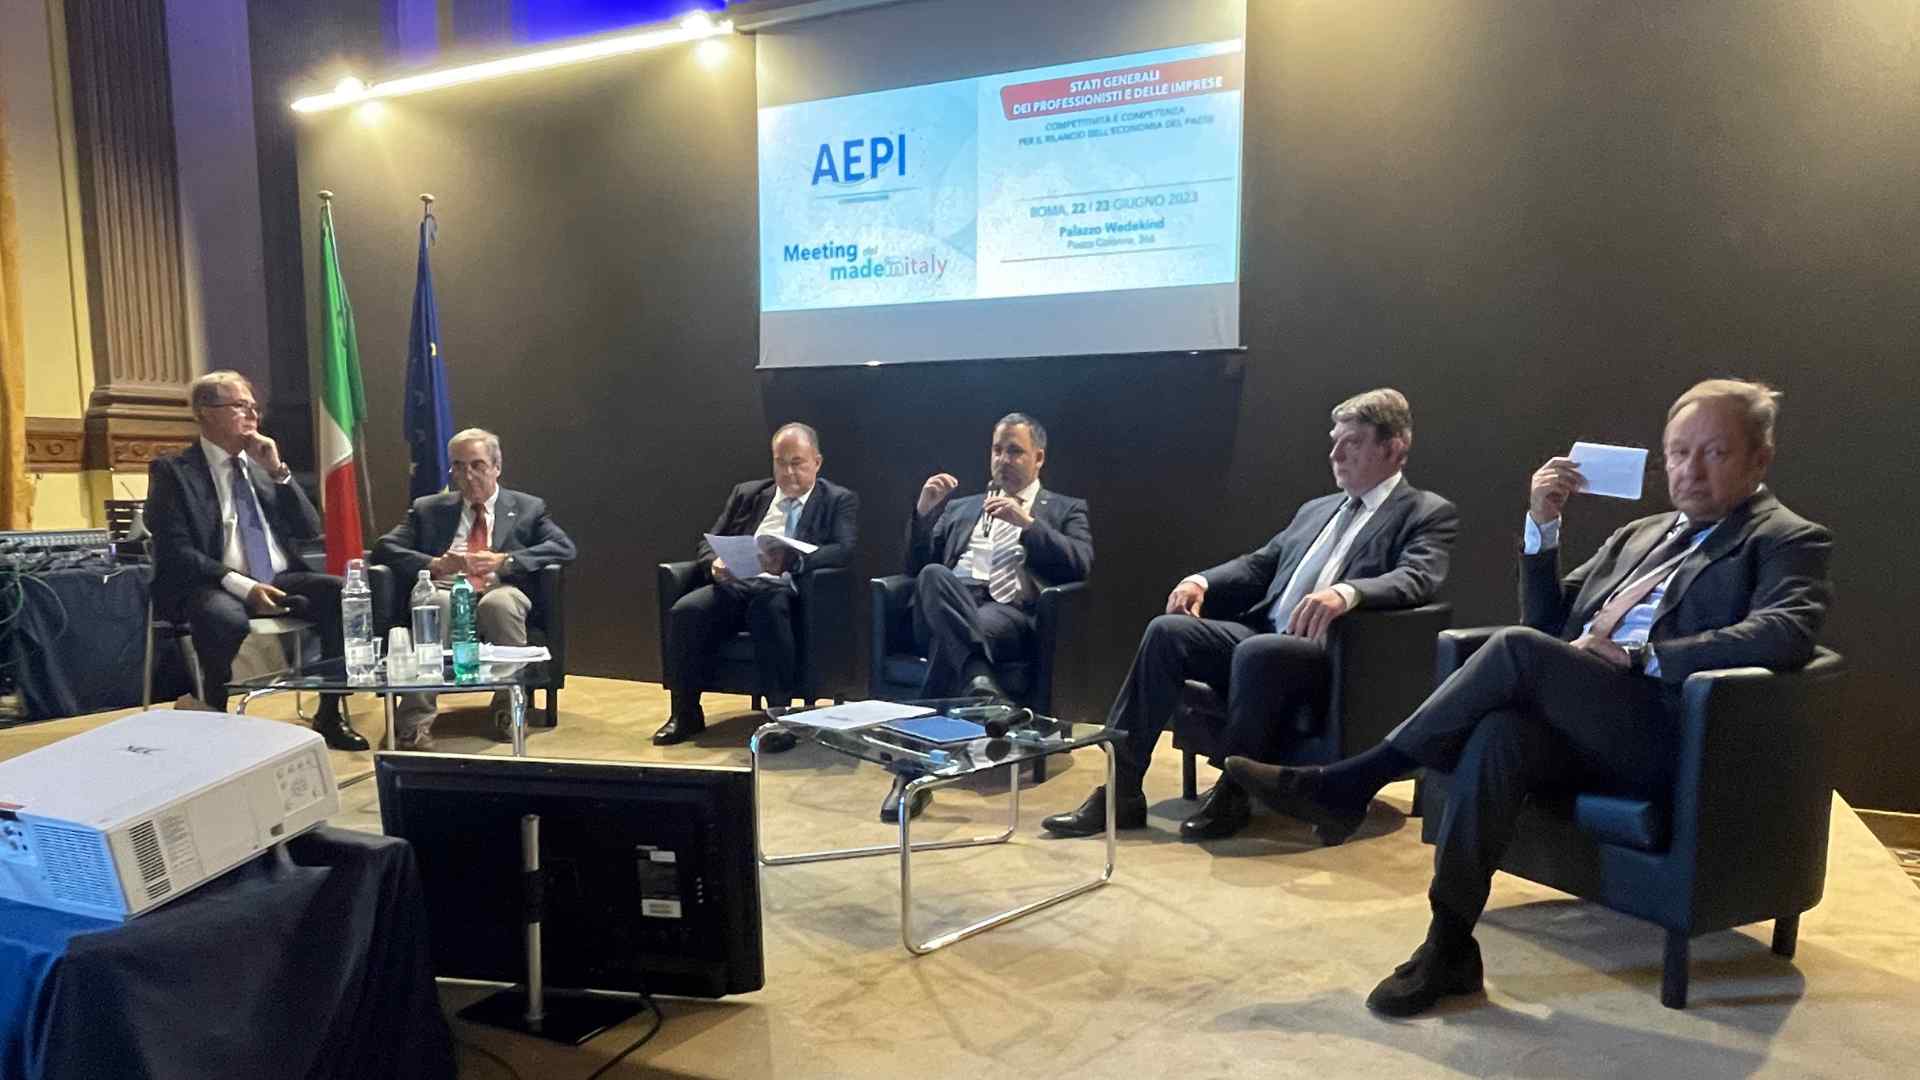 FIAP interviene al Meeting del Made in Italy organizzato da AEPI